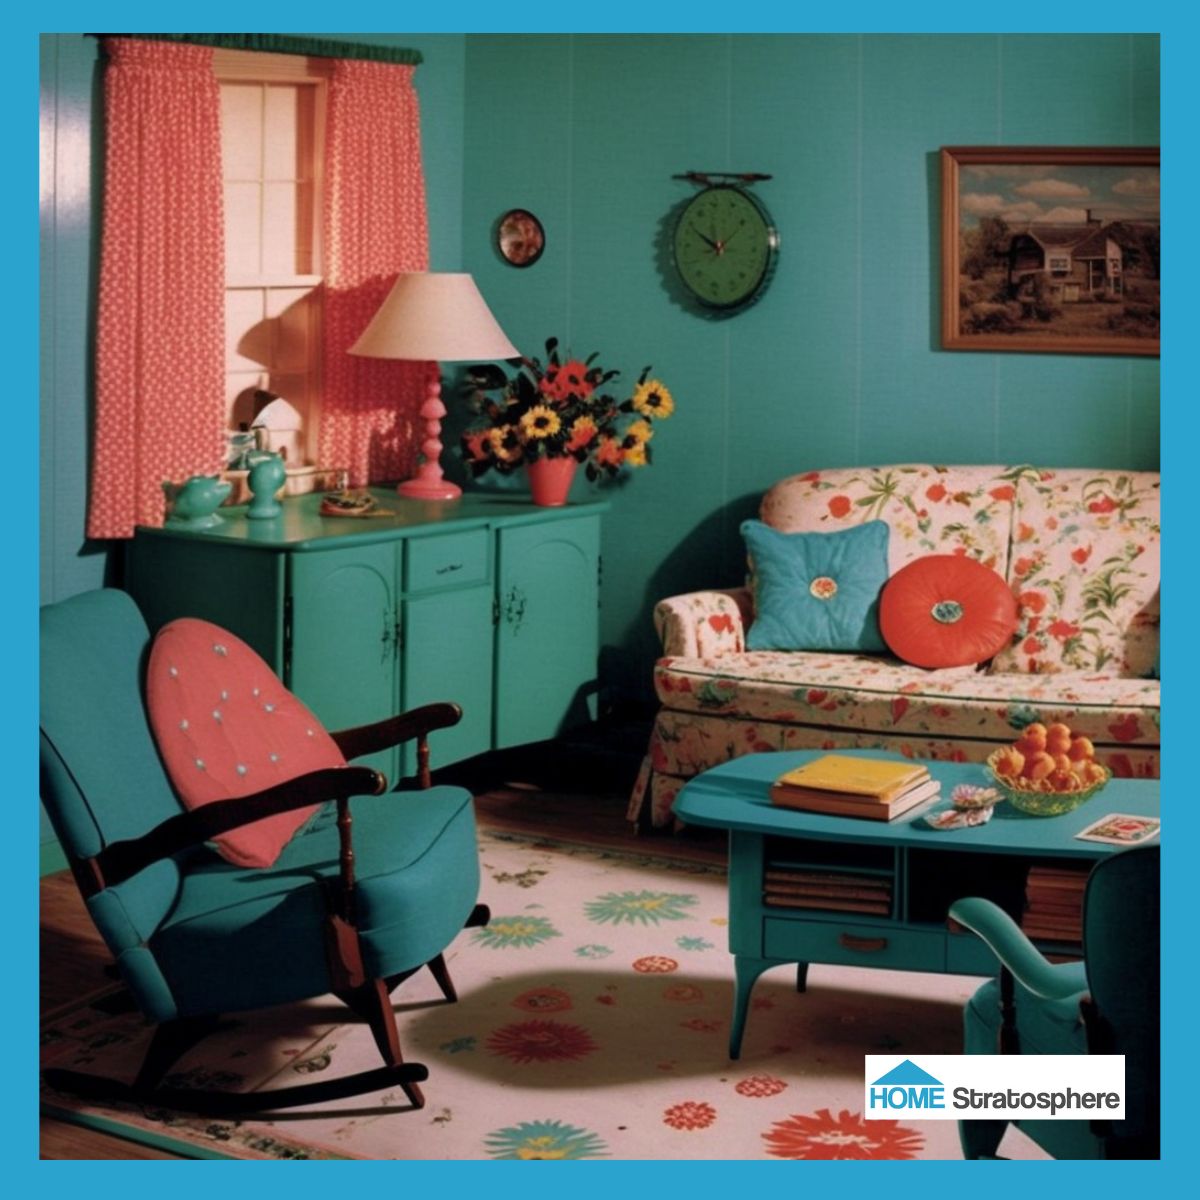 青色的墙壁和家具，让这个房间里所有的青色都让人感觉铺天盖地。然而，可爱的碎花沙发和地毯打破了纯色，为空间增添了魅力。粉色的装饰物，如灯、窗帘、抱枕，有助于增加空间的温暖。要是能坐在沙发上，享受一片新鲜水果该多好啊!